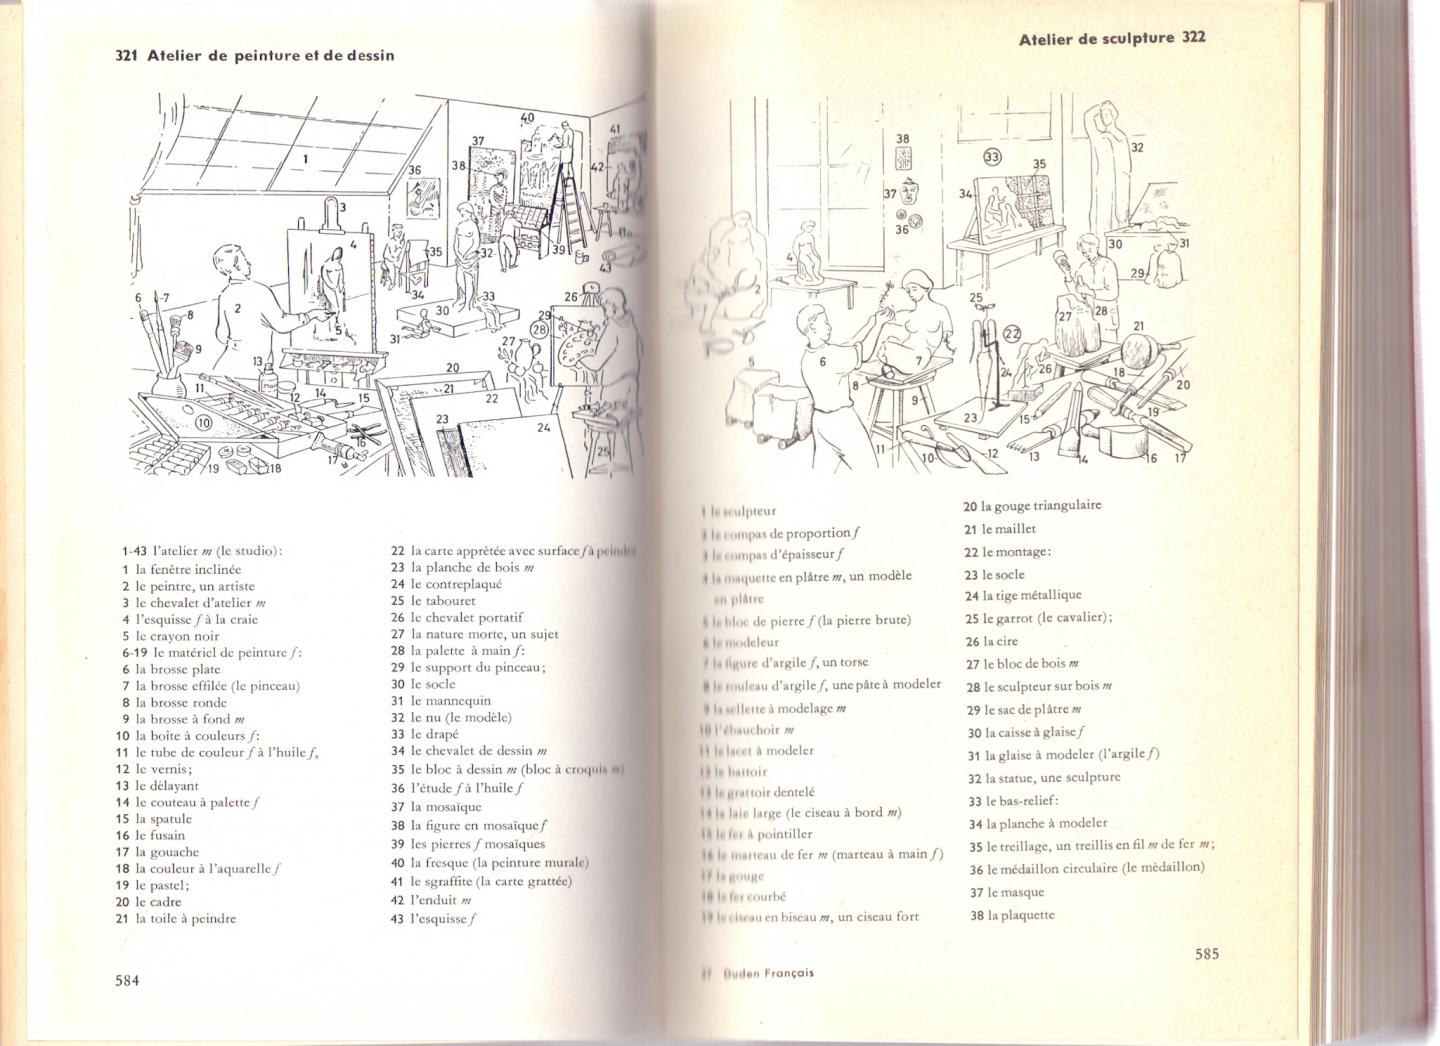 Bibliographisches Institut Mannheim (red) (ds1380) - Duden Francais Dictionnaire en images